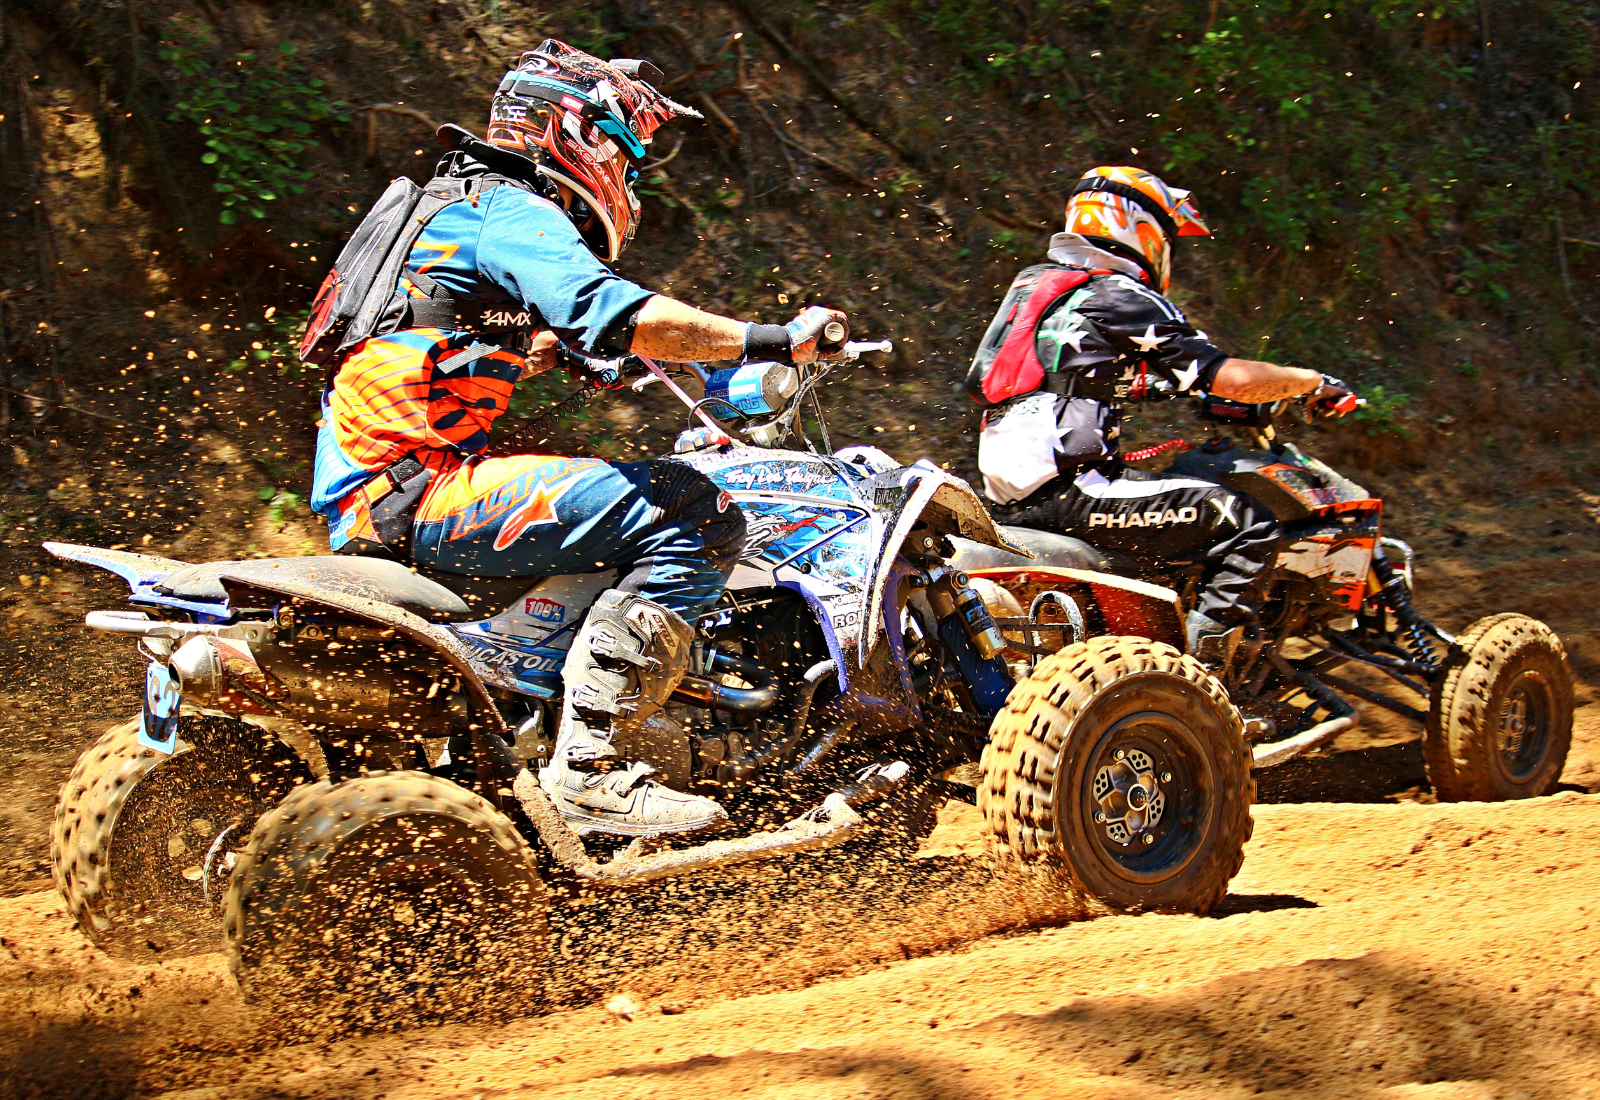 ATVs racing in the dirt